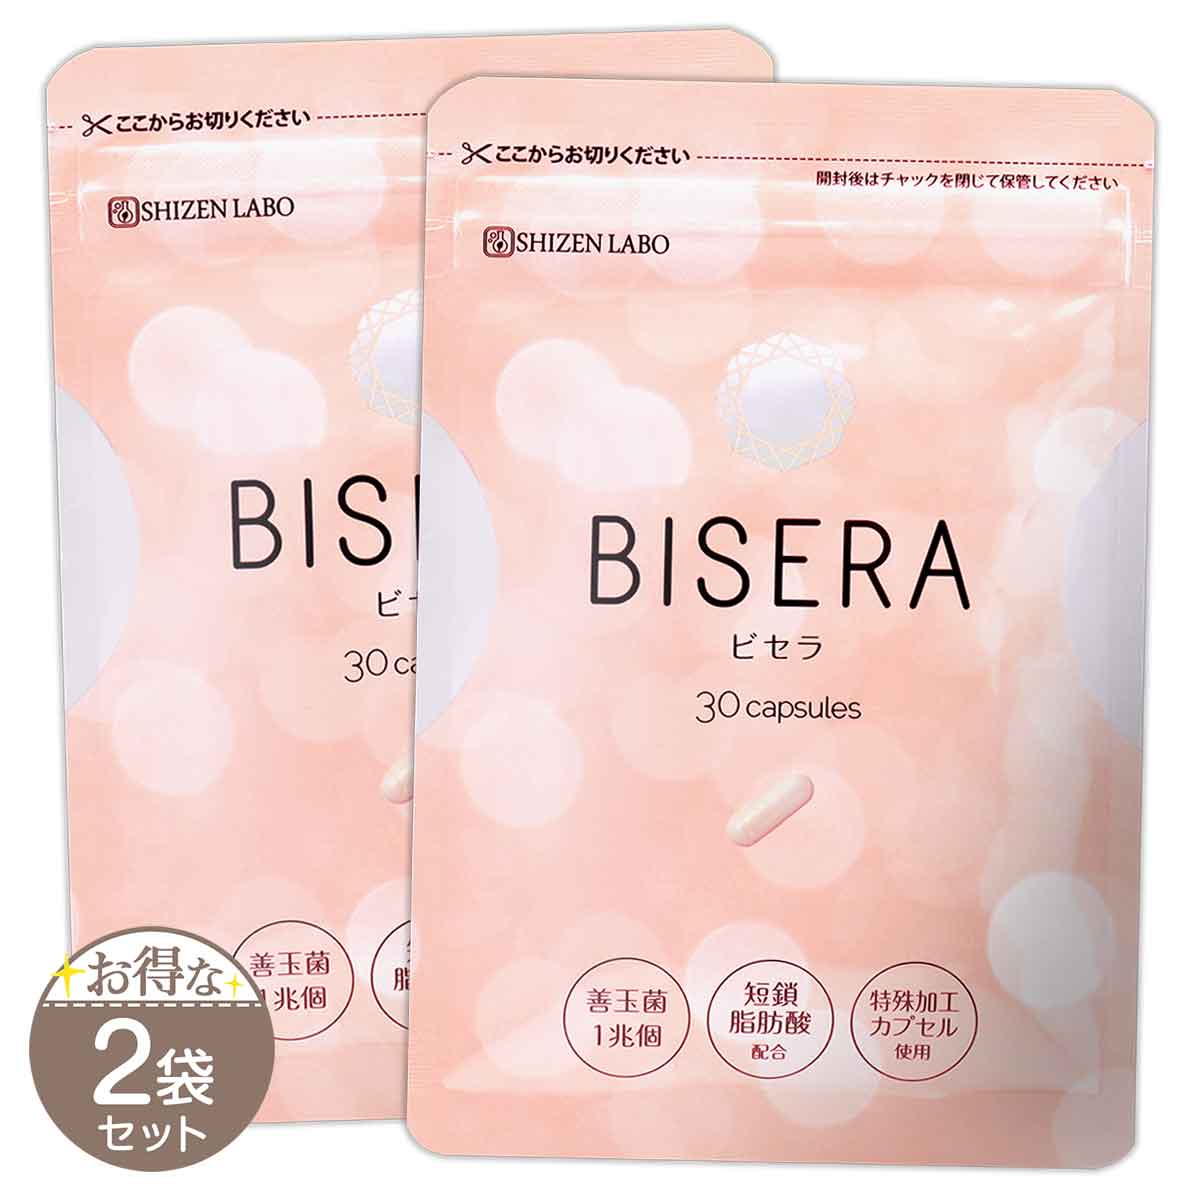 【 2袋セット 】 ビセラ BISERA 11.25g ( 375mg×30粒 ) ヘルスアップ サプリメント サプリ メール便送料無料SPL /  自然派研究所ビセラS01-01 / BISERA-02P